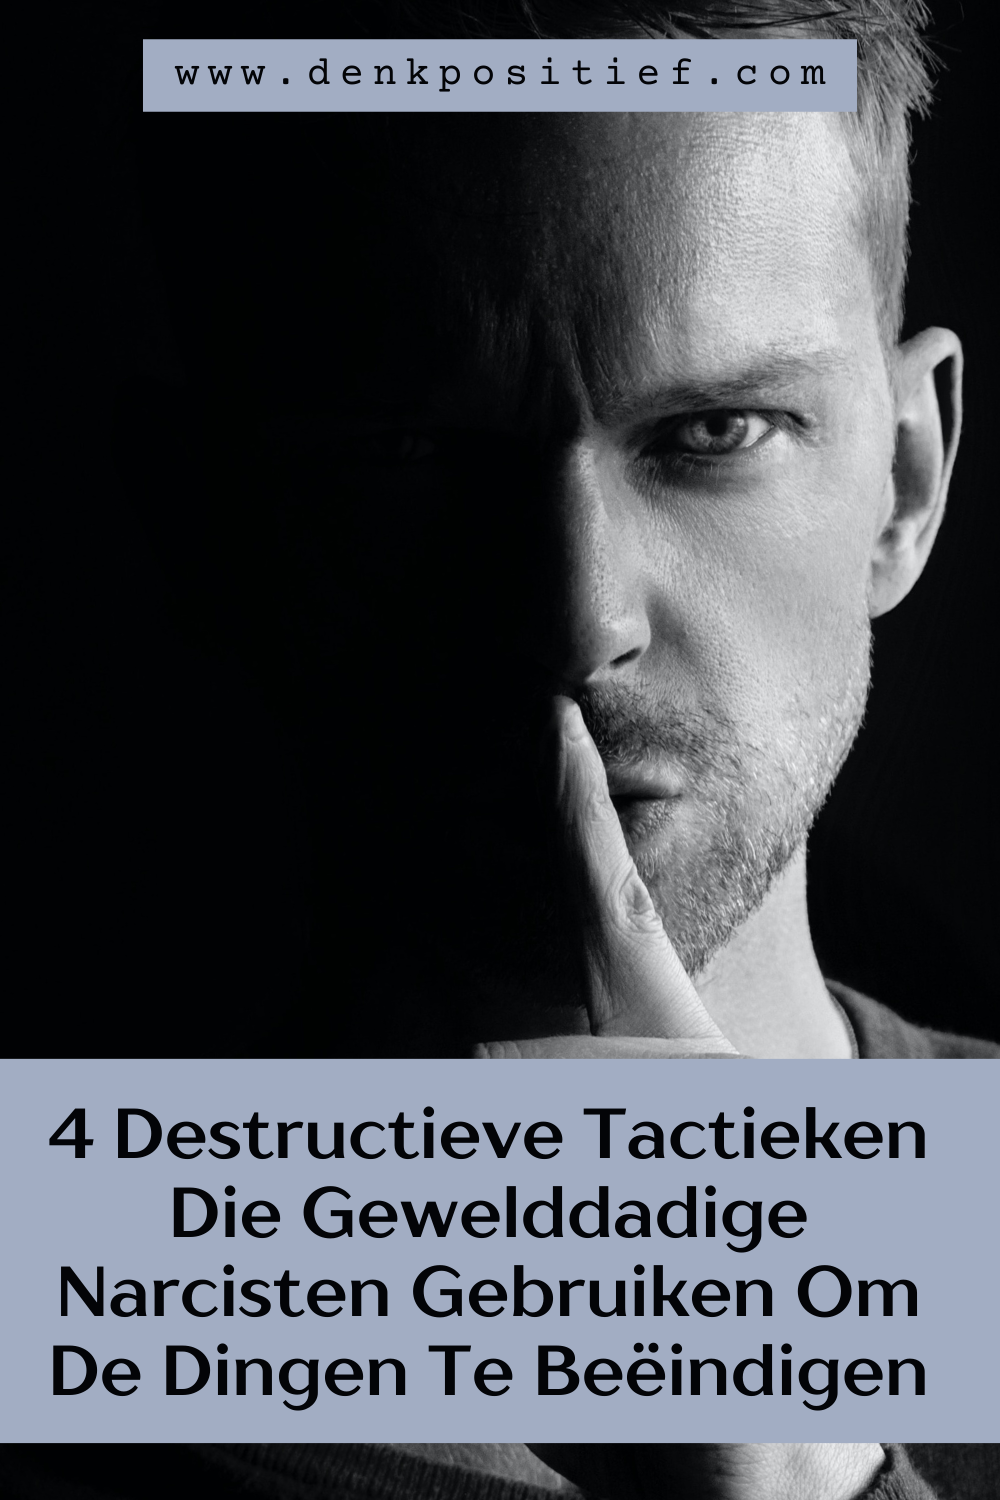 4 Destructieve Tactieken Die Gewelddadige Narcisten Gebruiken Om De Dingen Te Beëindigen